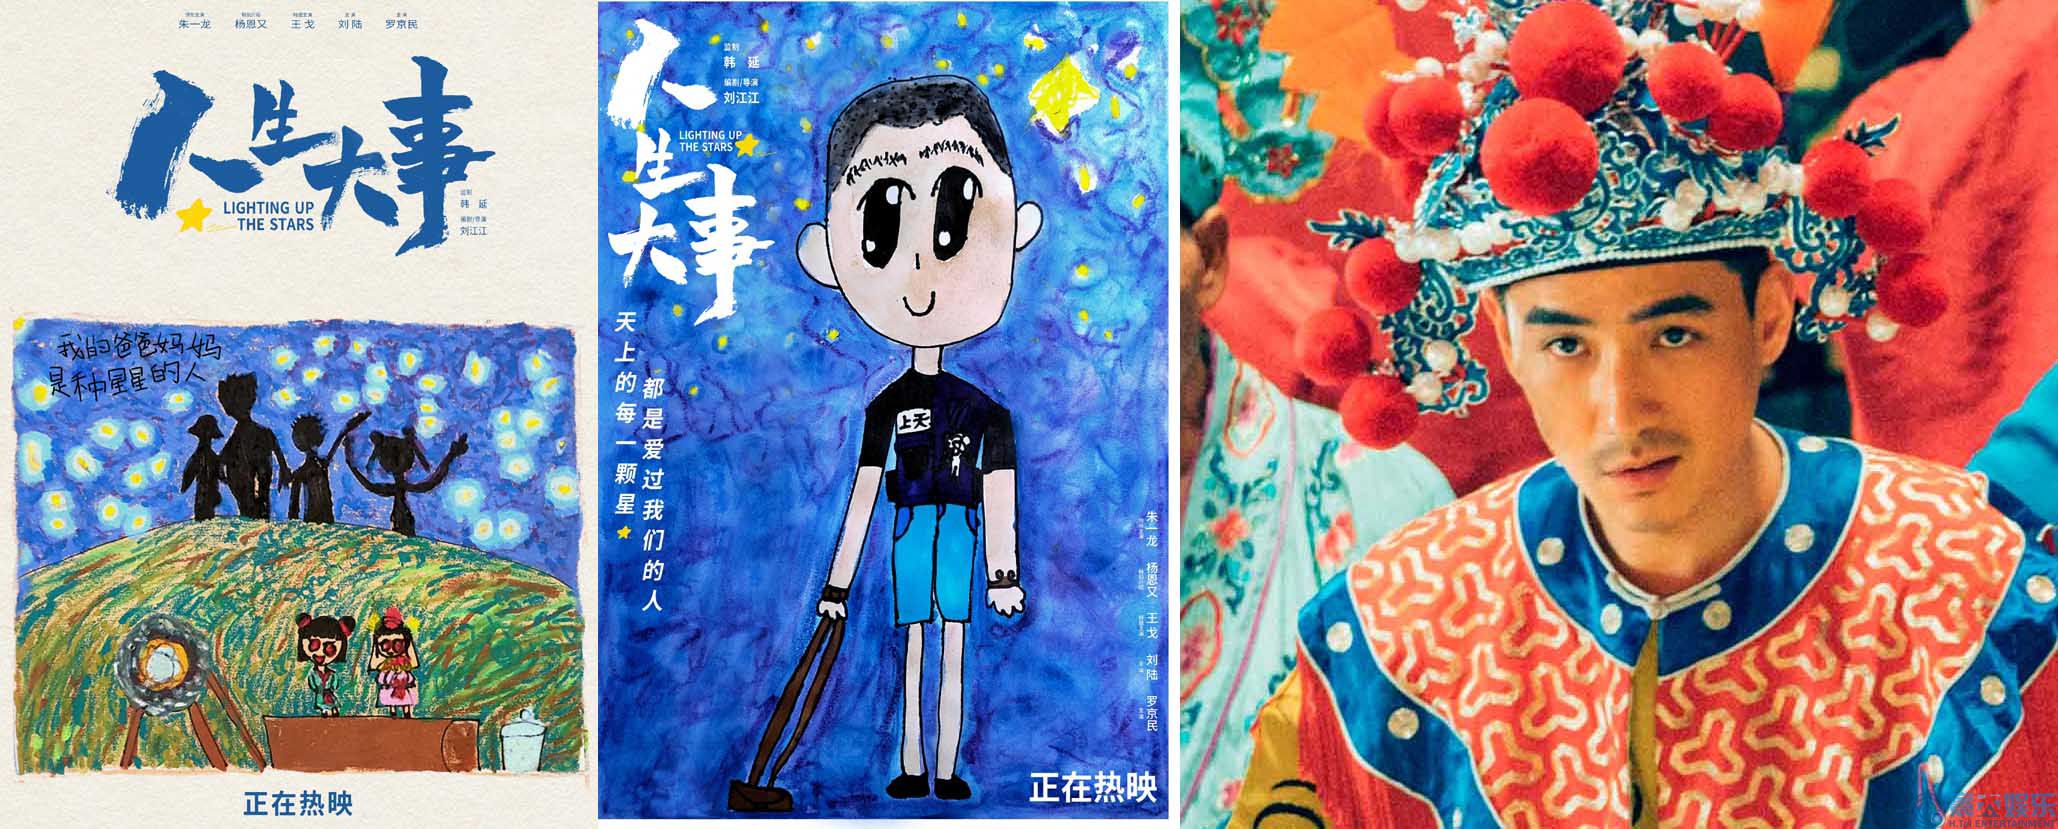 朱一龙电影《人生大事》破5亿 小文手绘海报童真笔触刻画温情